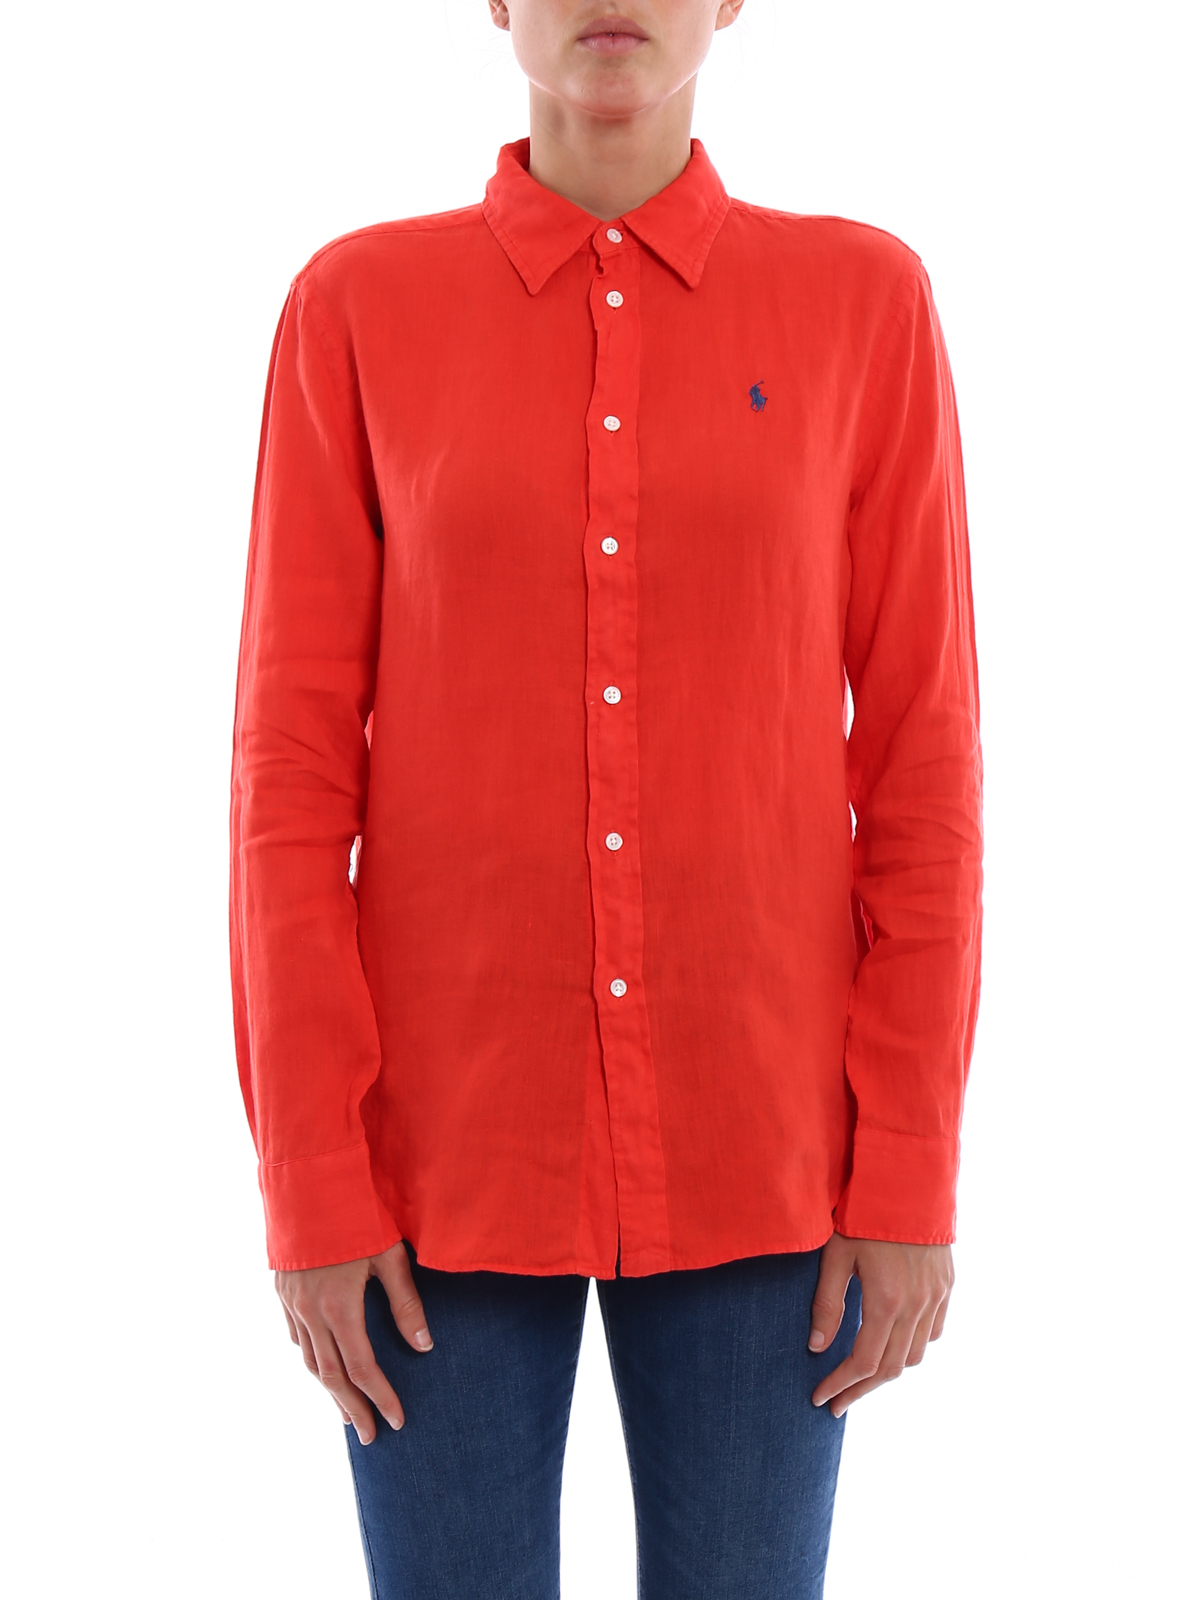 Shirts Polo Ralph Lauren - Red linen shirt - 211697460001 